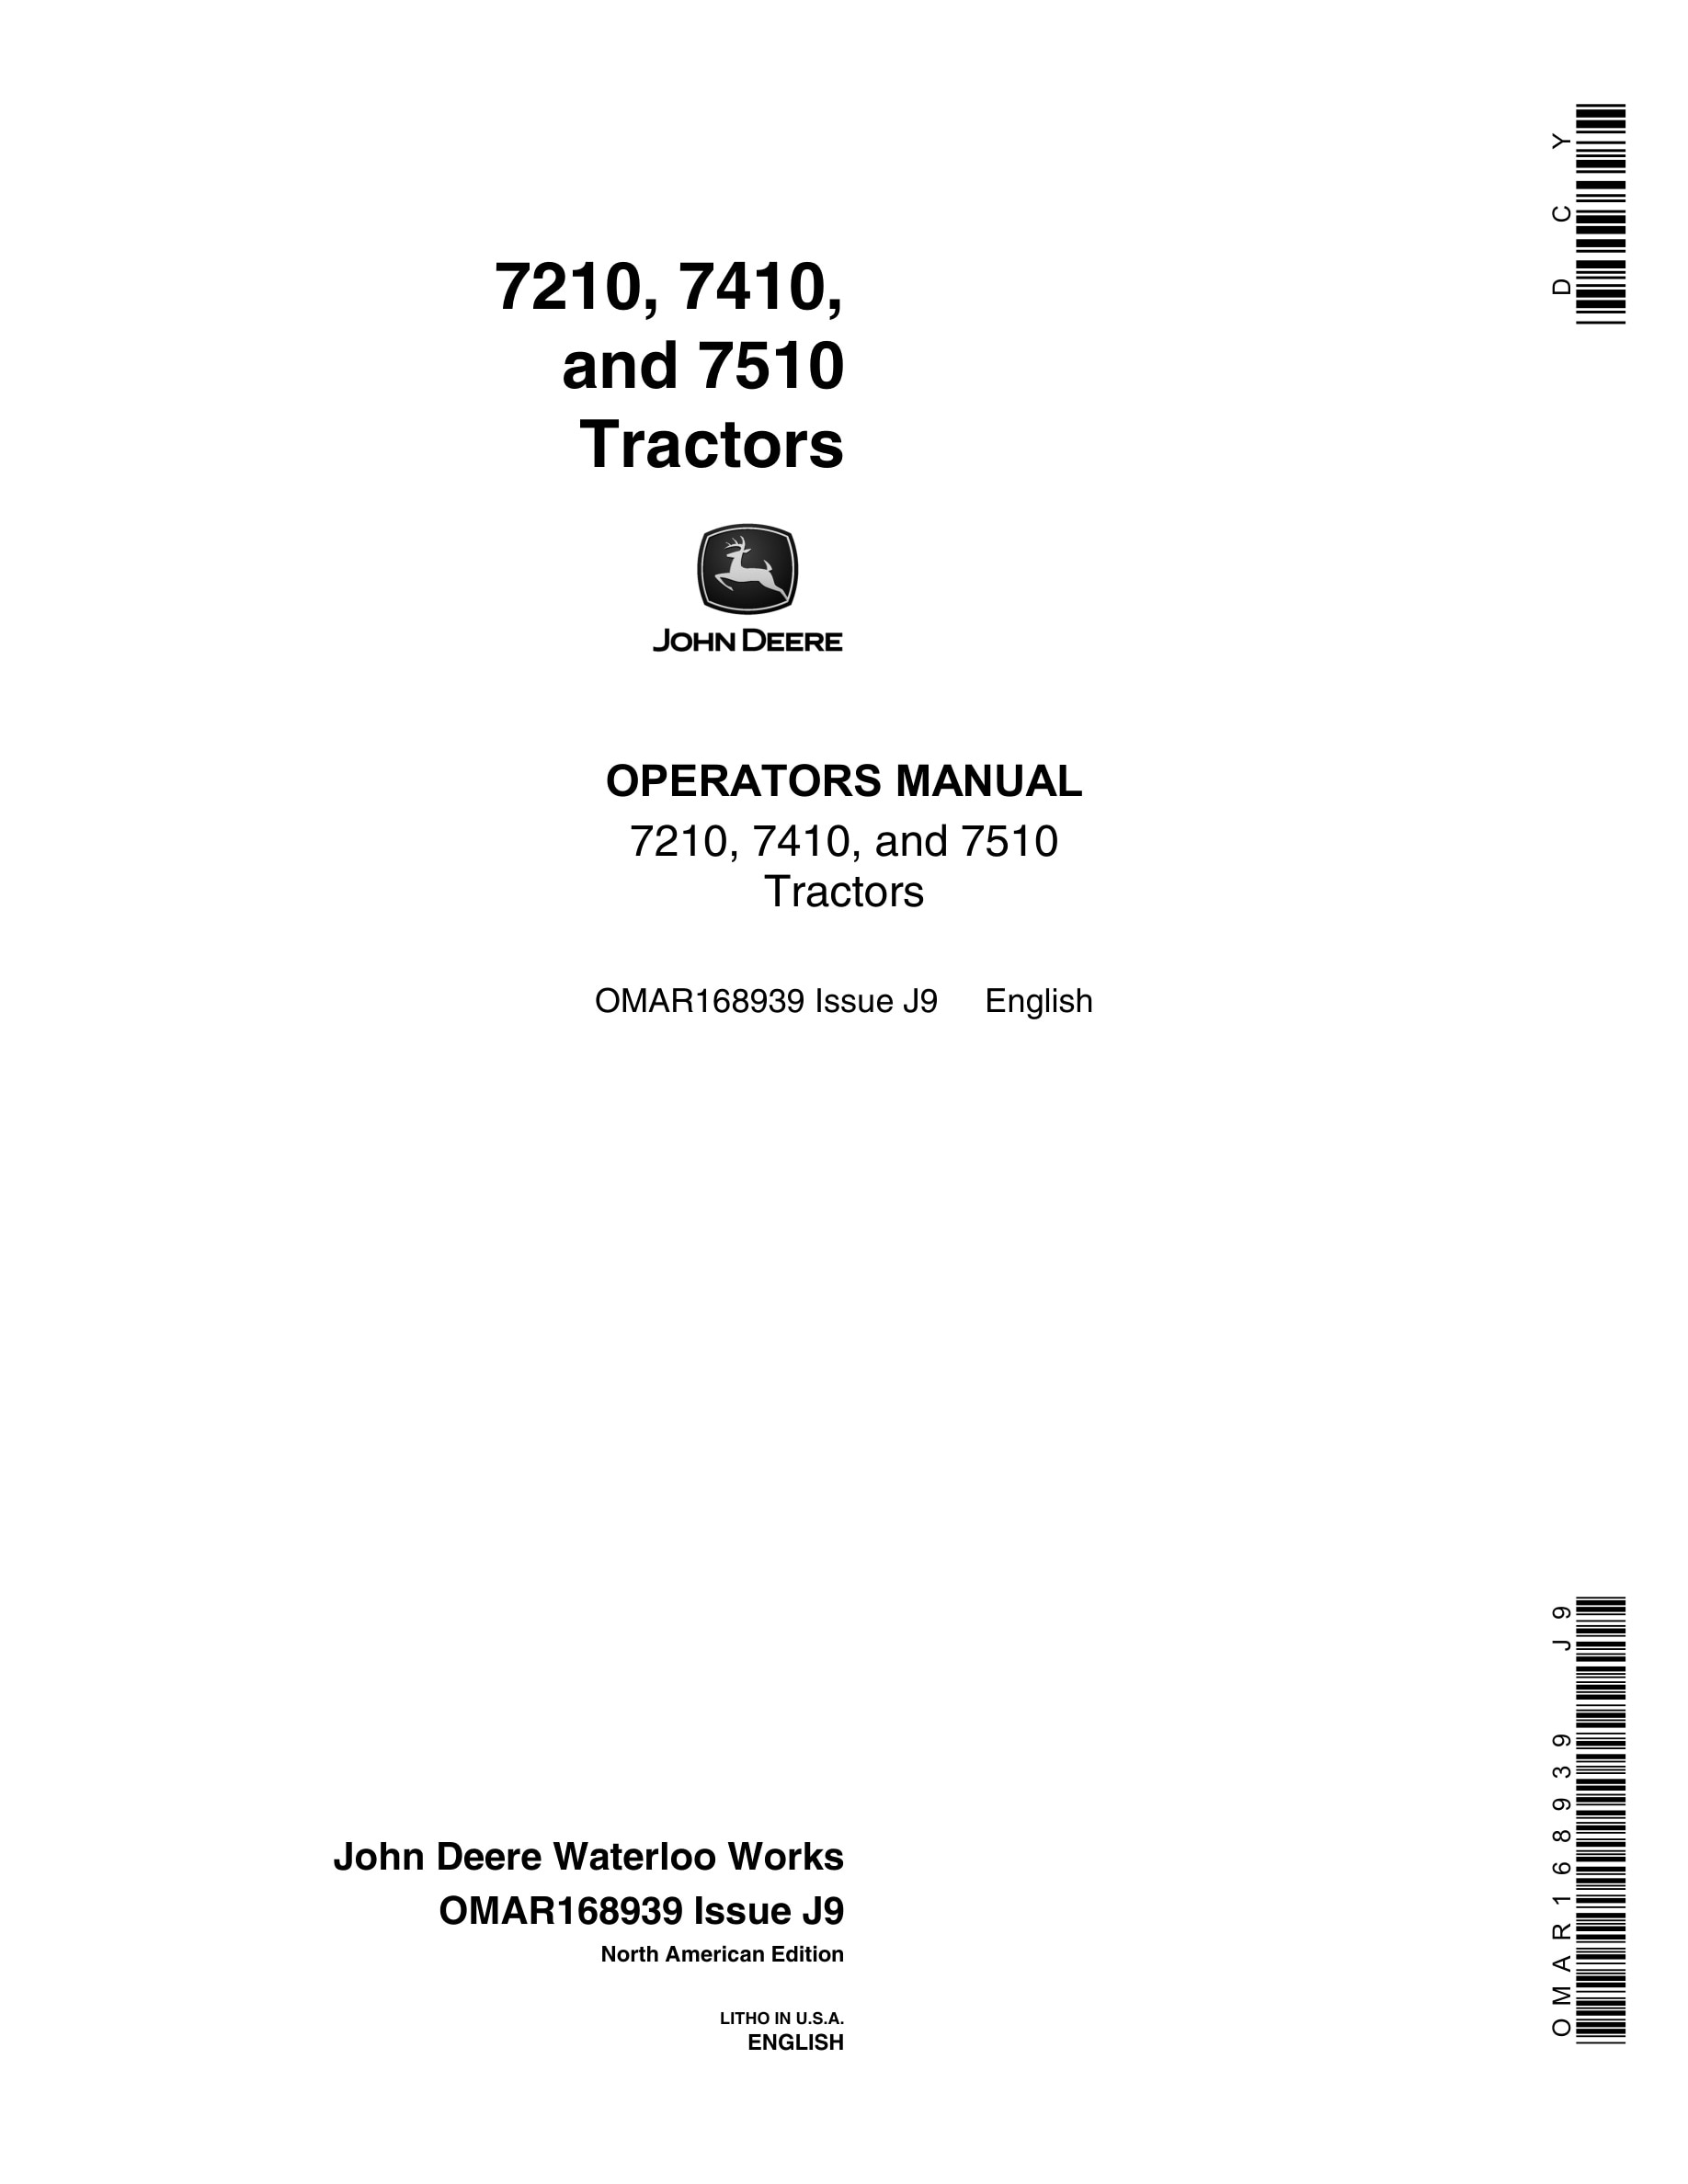 John Deere 7210, 7410, and 7510 Tractor Operator Manual OMAR168939-1